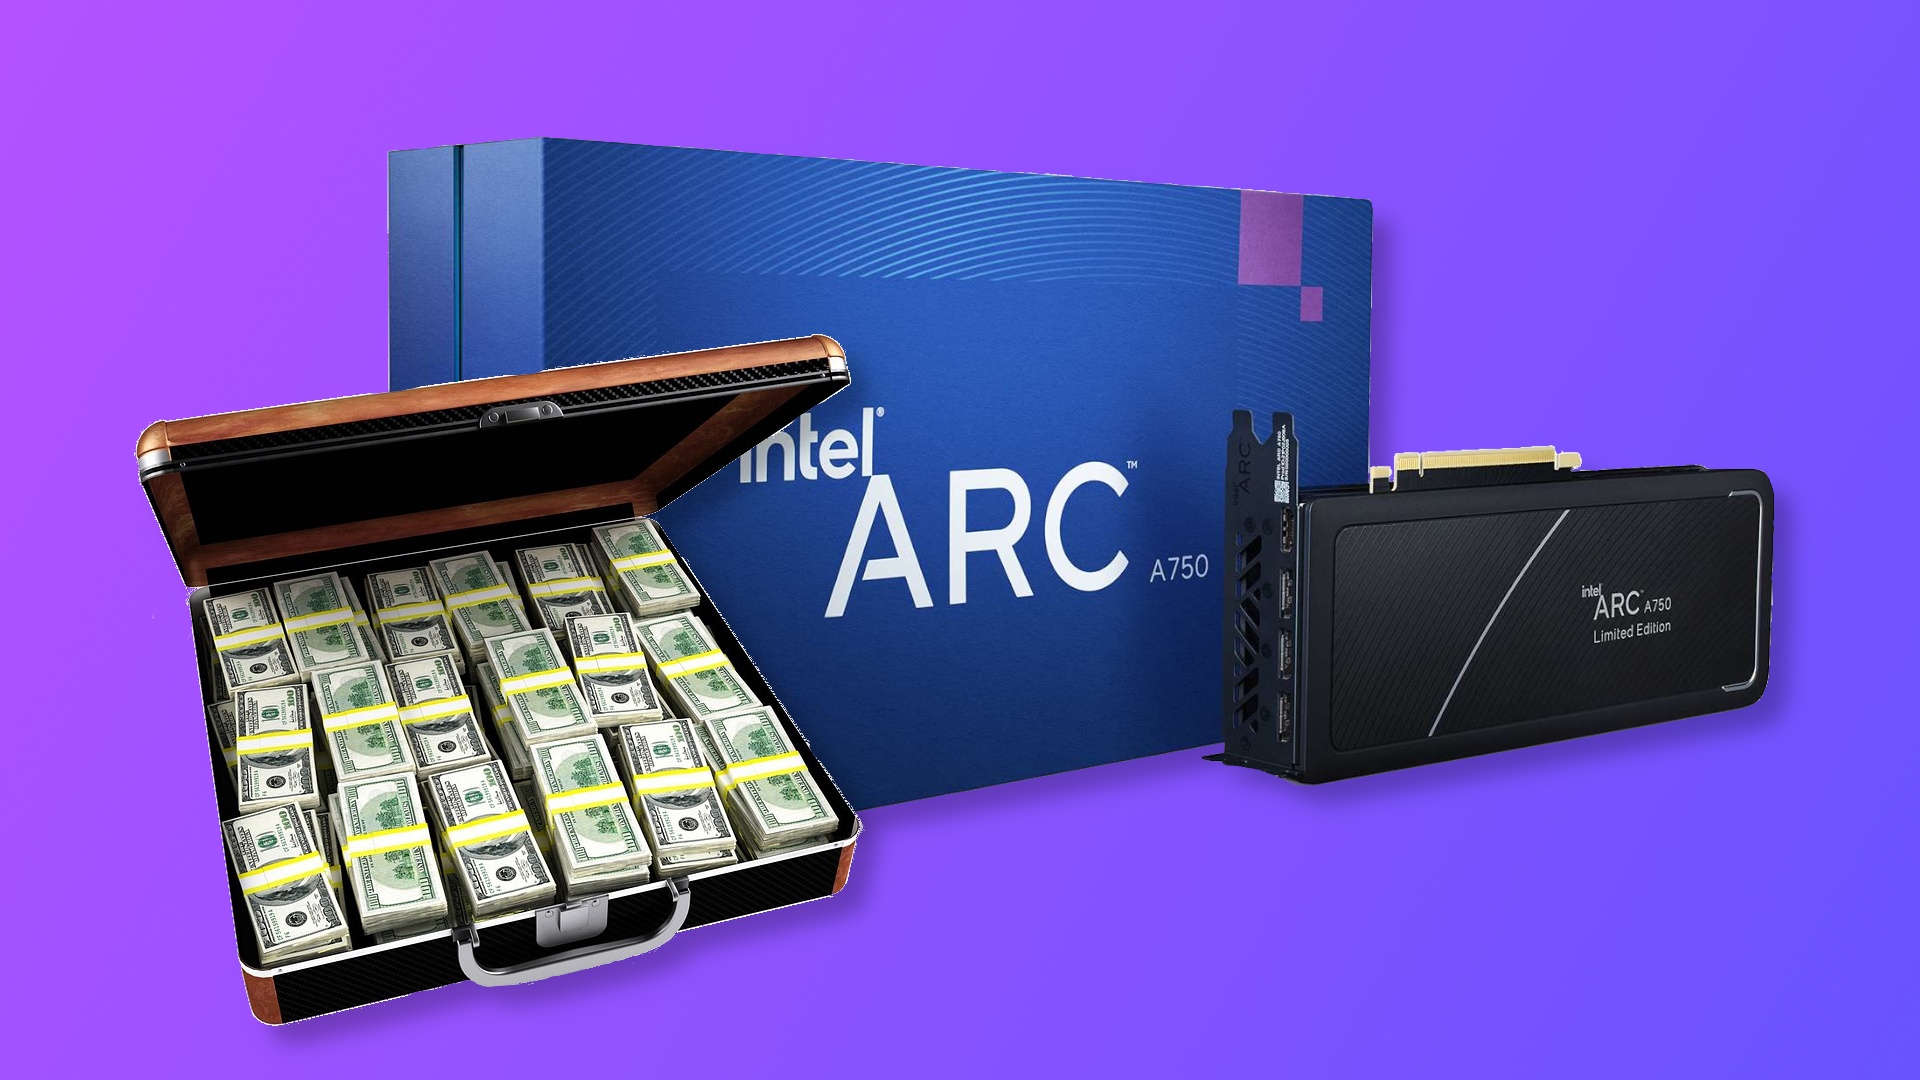 #Arc Alchemist: Intel sagt Nvidia und AMD mit seinen Grafikkarten-Preisen den Kampf an